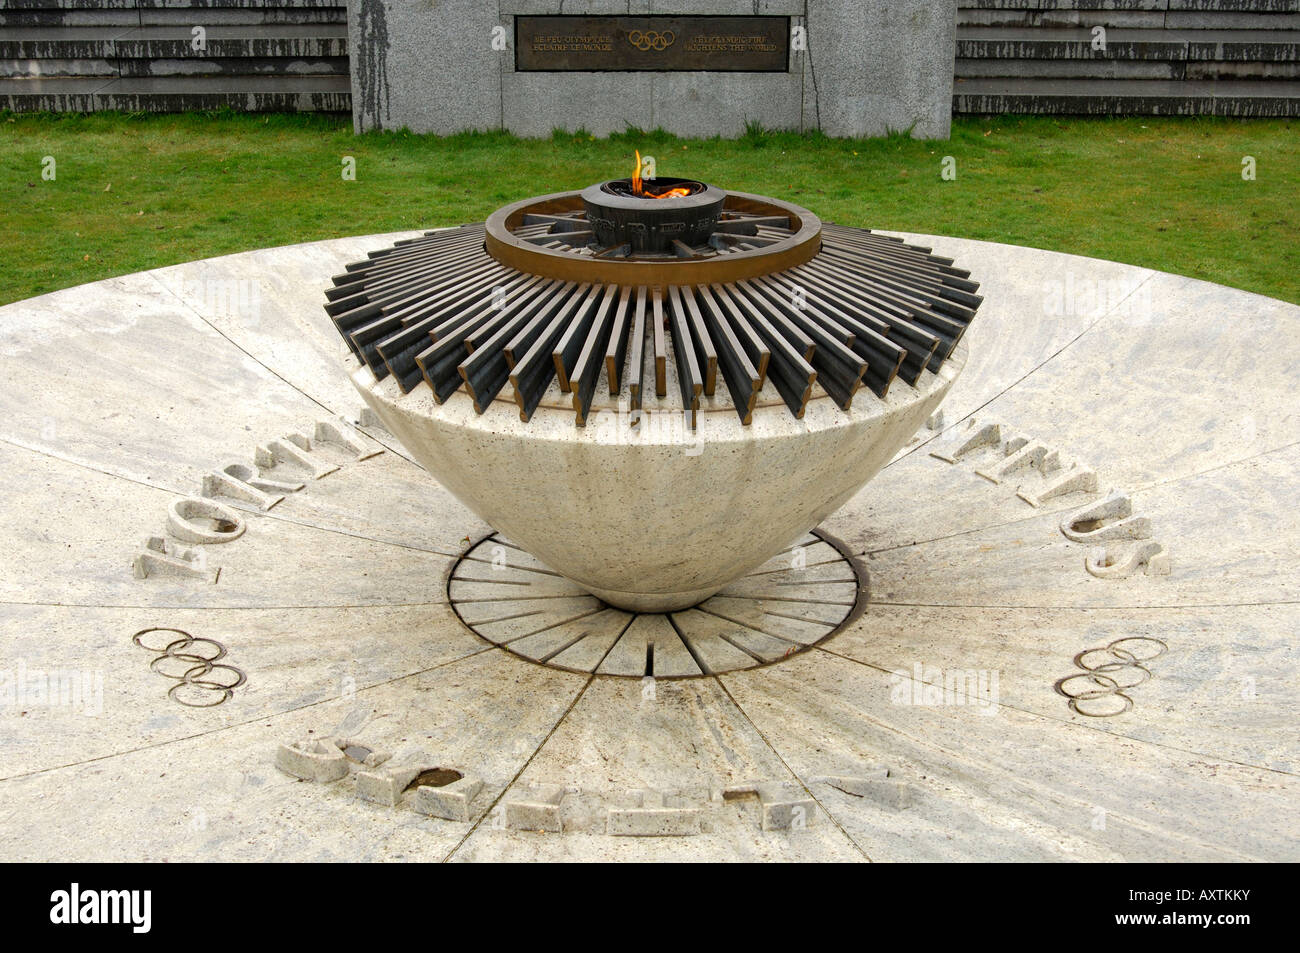 Il fuoco olimpico presso il Museo Olimpico iscrizione nel retro legge Il fuoco olimpico illumina il mondo losanna svizzera Foto Stock